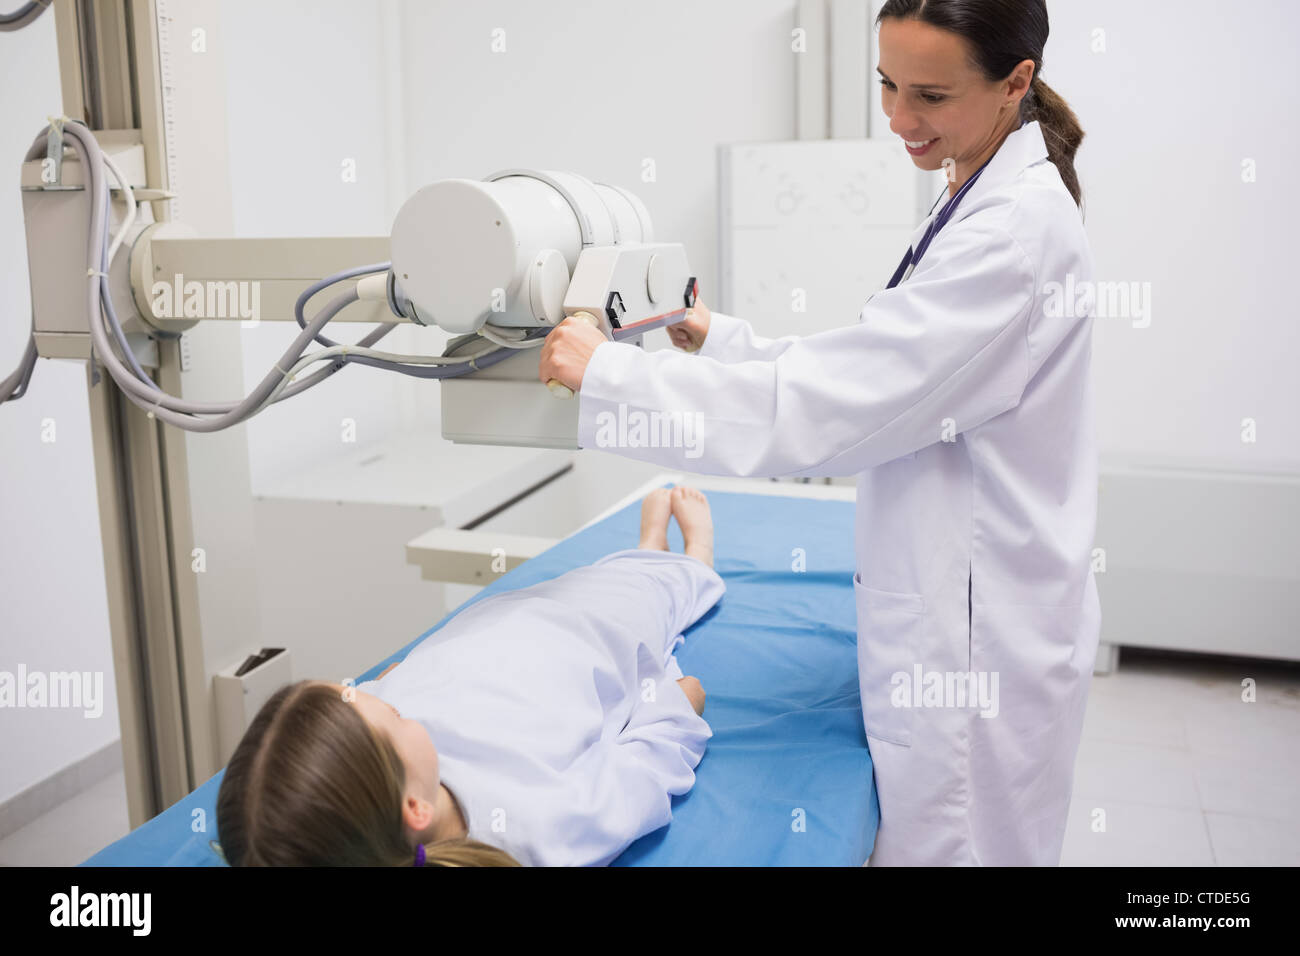 Female doctor holding a radiography la machine sur un patient Banque D'Images